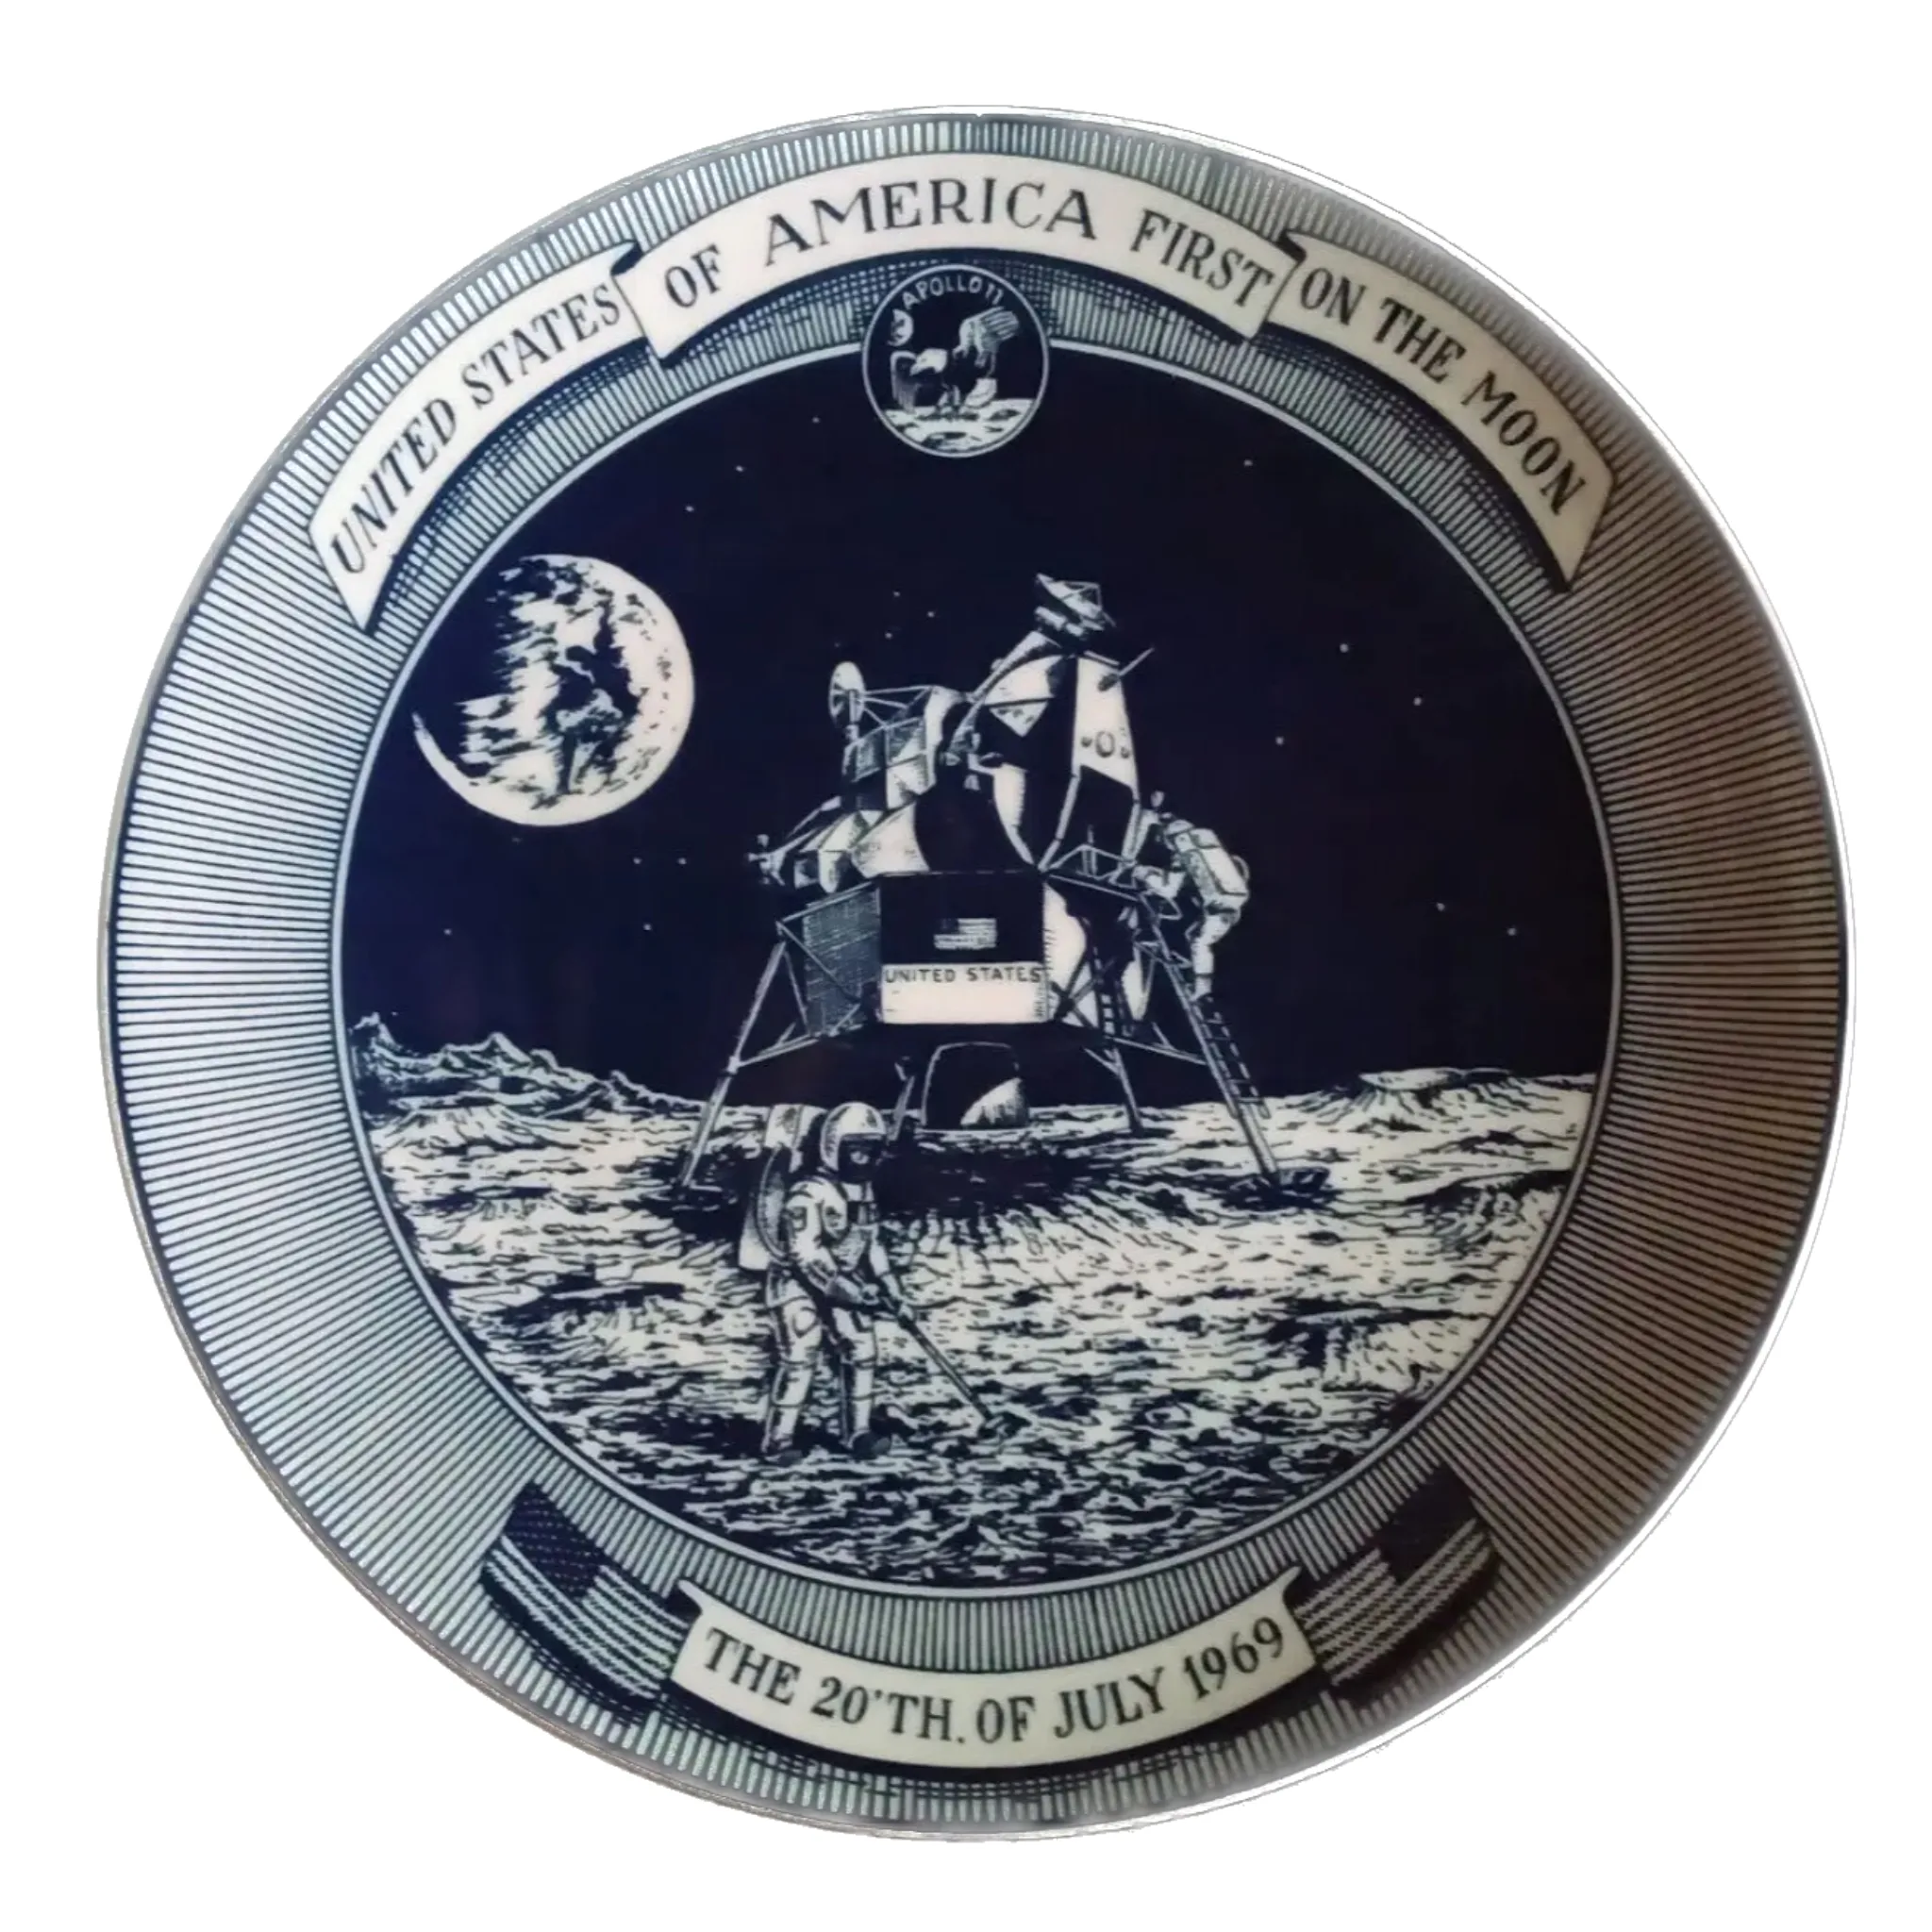 Rare Collector Apollo 11 moon landing plate. Prehistoric Online